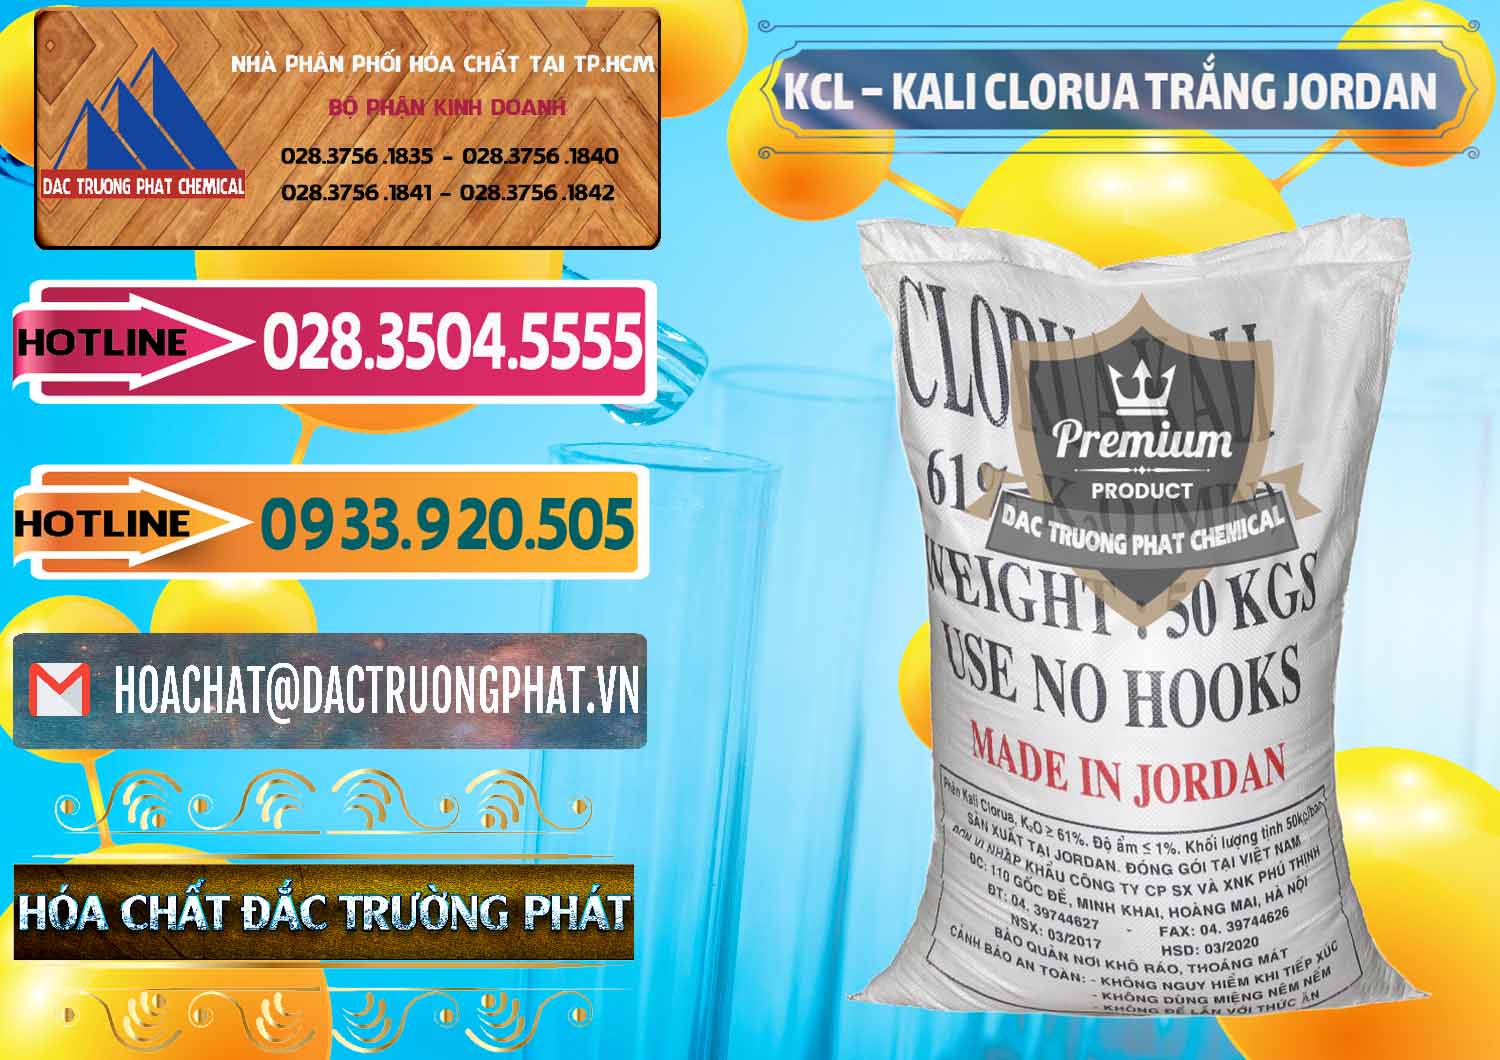 Cty cung cấp và bán KCL – Kali Clorua Trắng Jordan - 0088 - Công ty chuyên cung cấp & nhập khẩu hóa chất tại TP.HCM - dactruongphat.vn